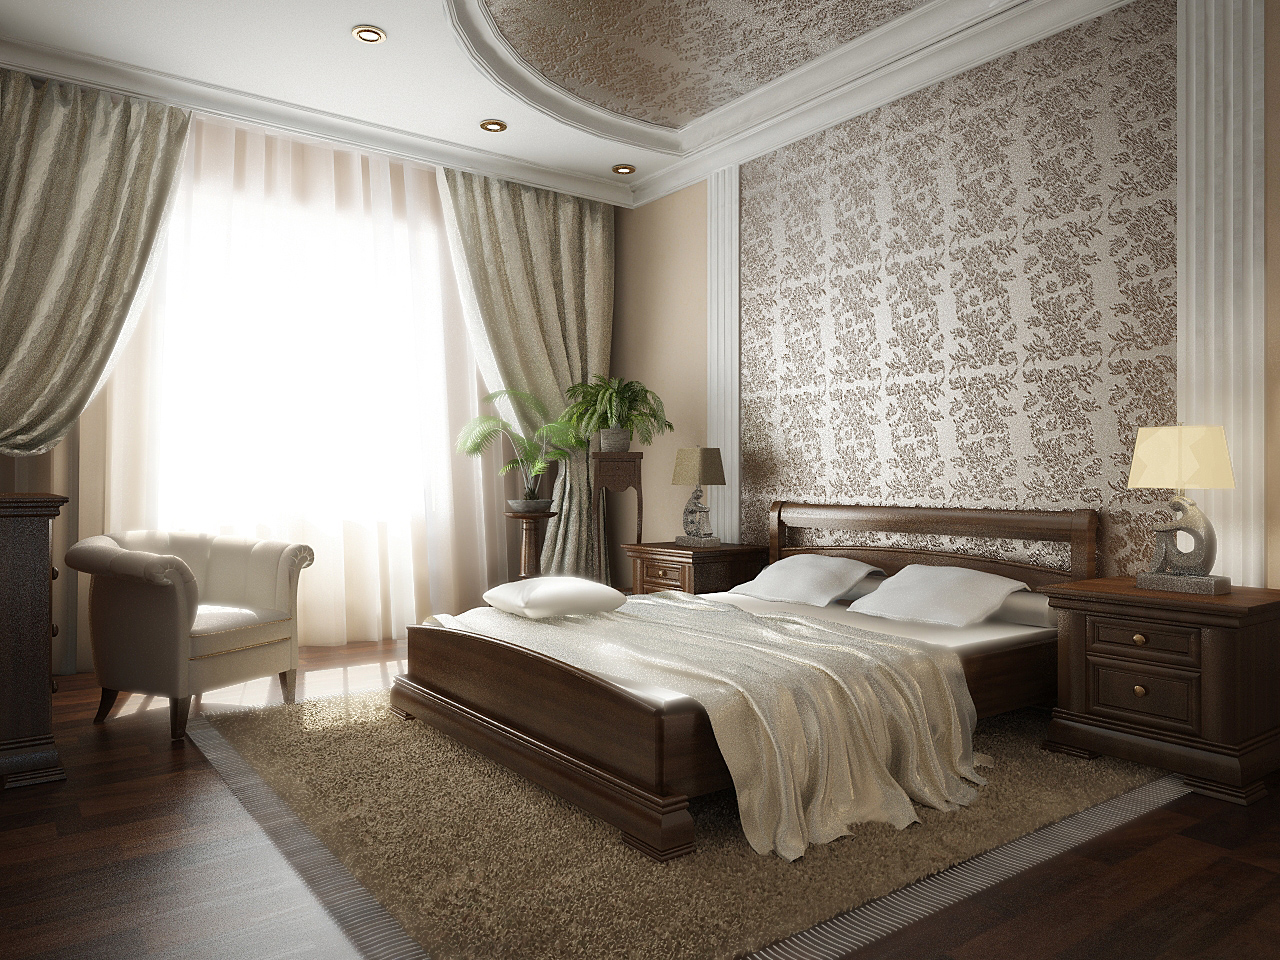 Фото интерьера спальни в доме » Современный дизайн на Vip-1gl.ru
